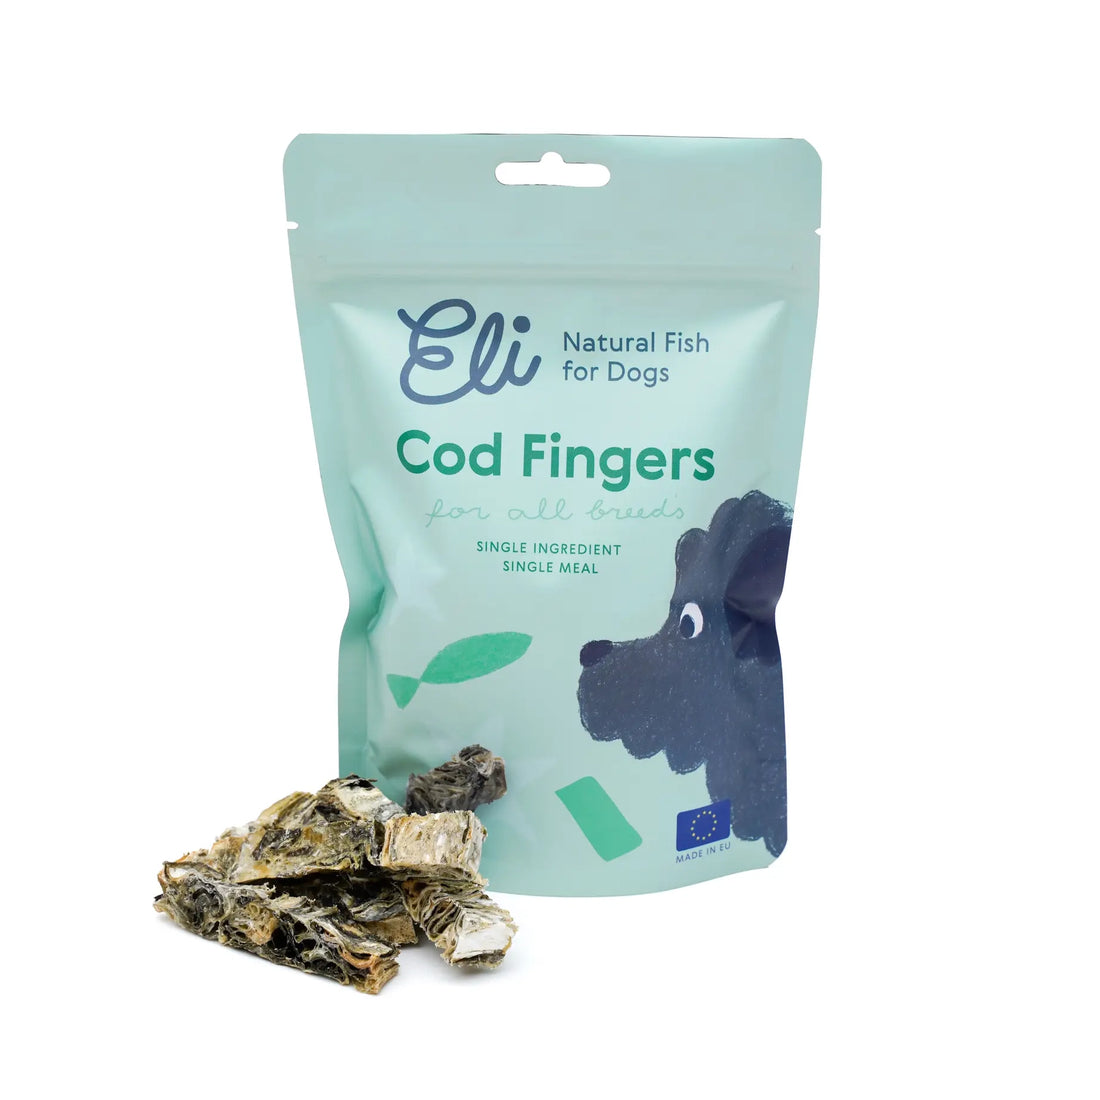 Cod Fingers Dog Treats